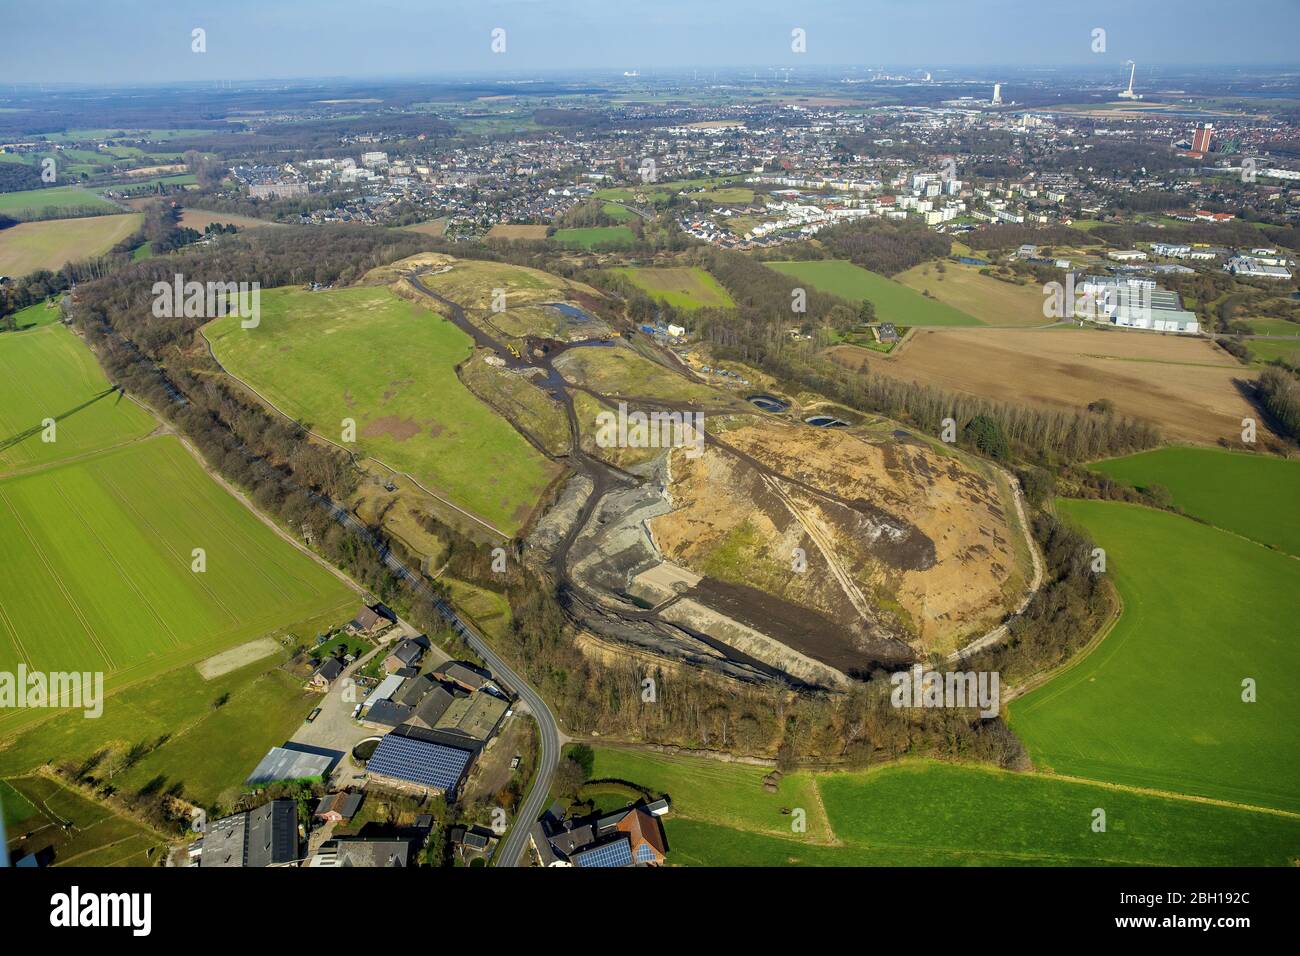 heaped landfill Eyller Berg in Kamp-Lintfort, 27.02.2016, aerial view, Germany, North Rhine-Westphalia, Ruhr Area, Kamp-Lintfort Stock Photo